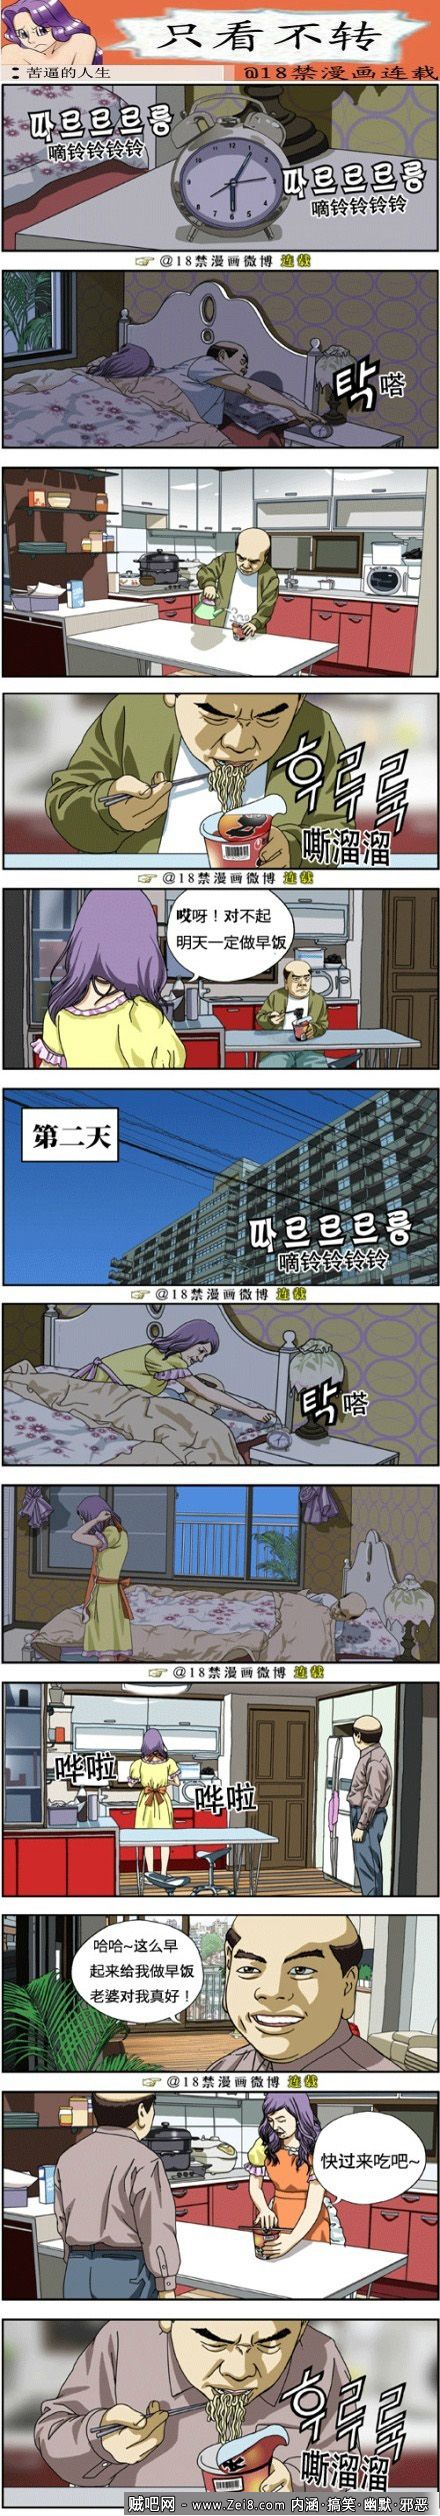 [韩国大叔漫画]：泡面也是厨艺